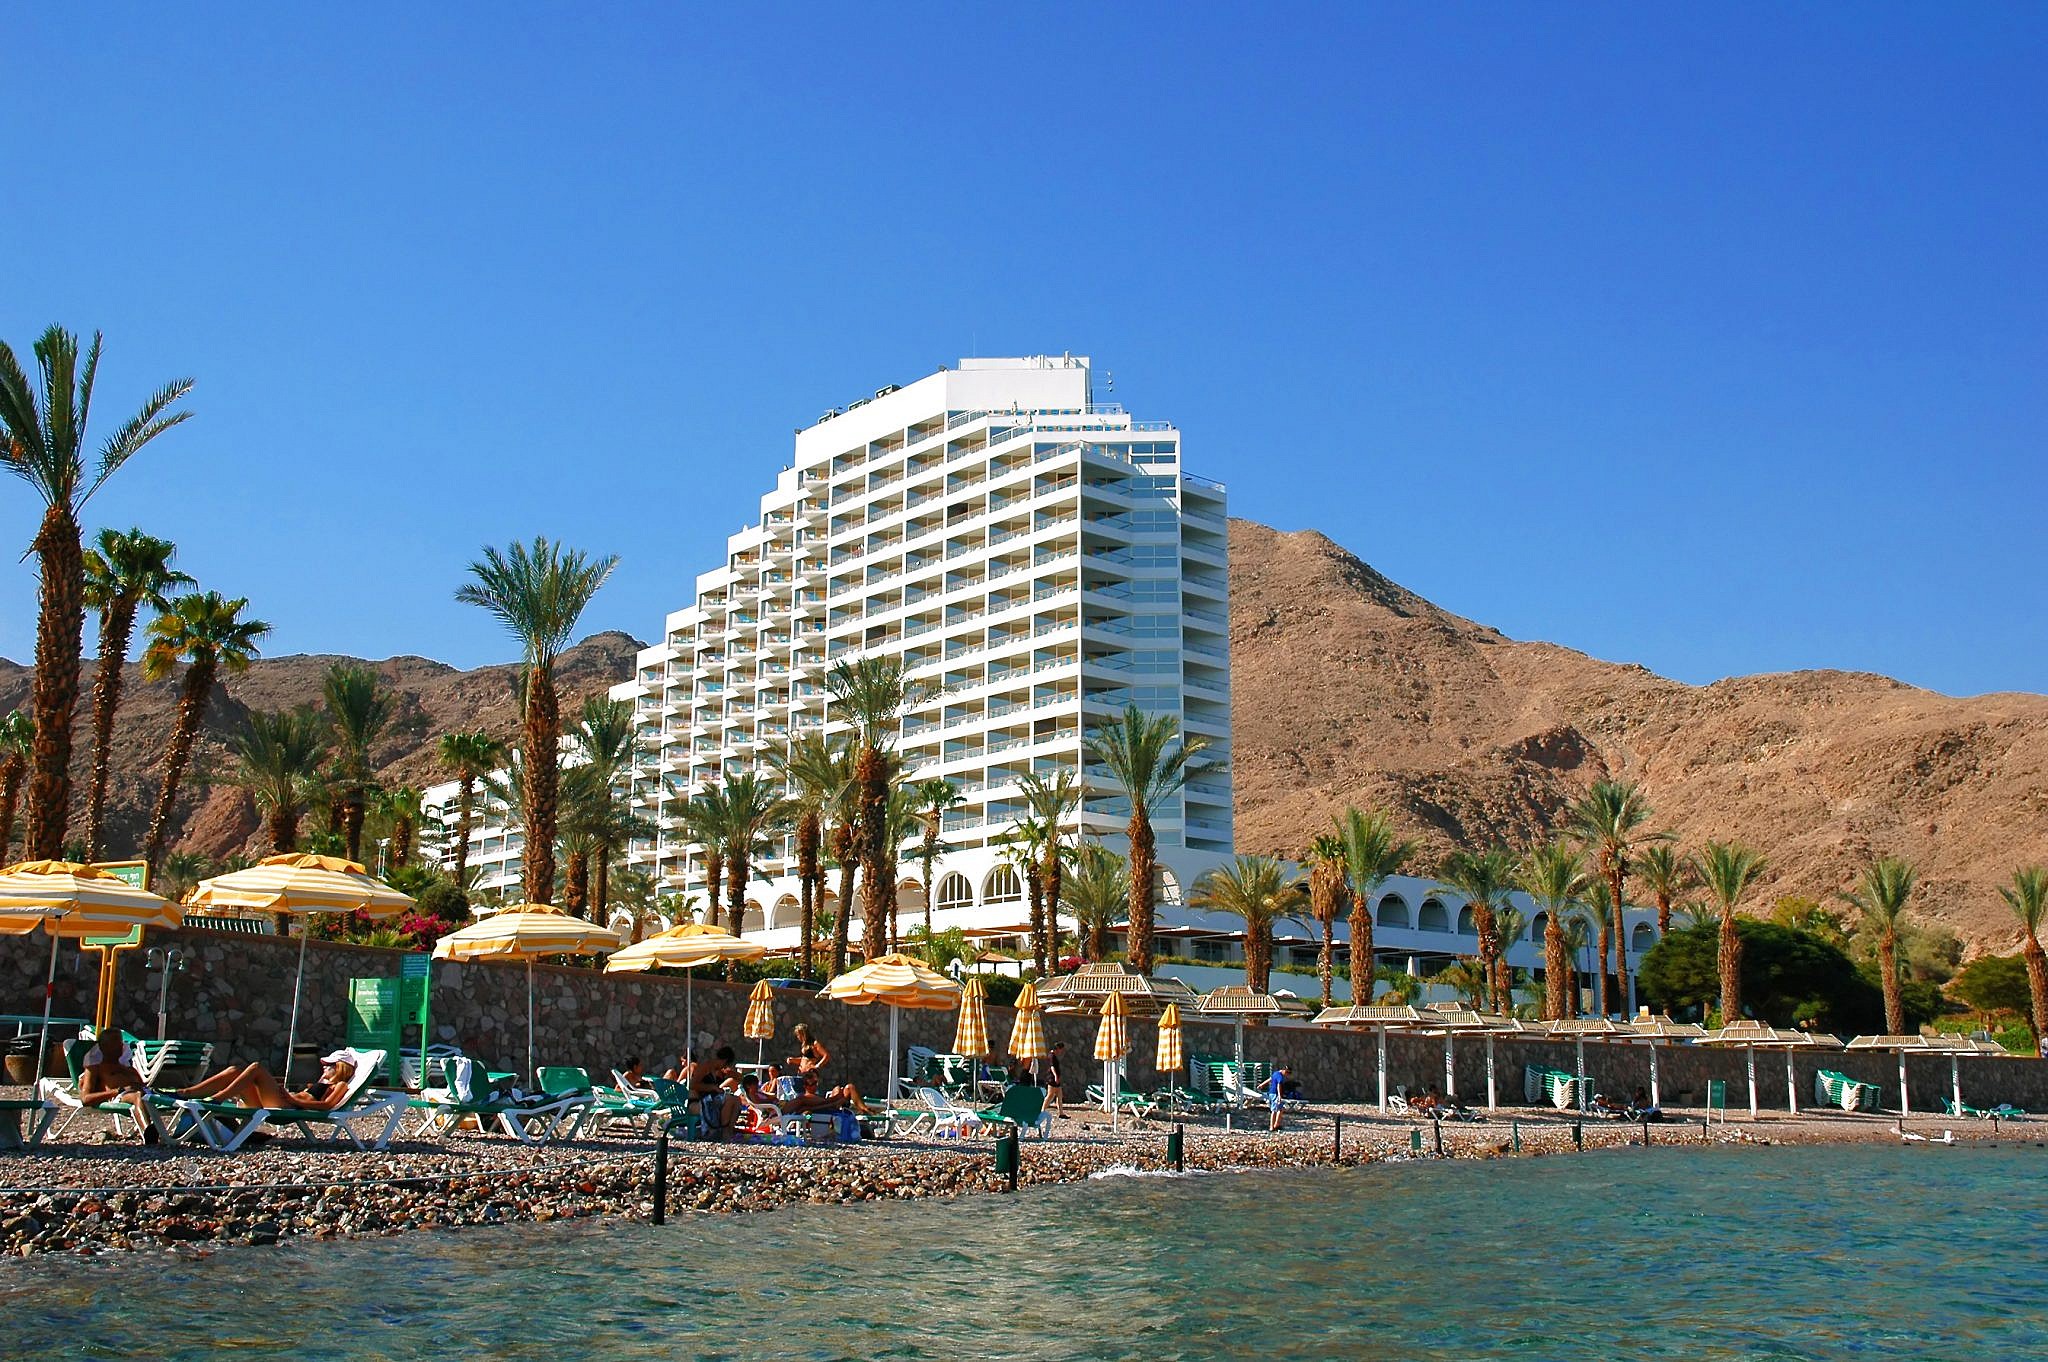 קופצים לאילת ושכולם יקפצו. מלון על חוף הים באילת (צילום: Shutterstock)